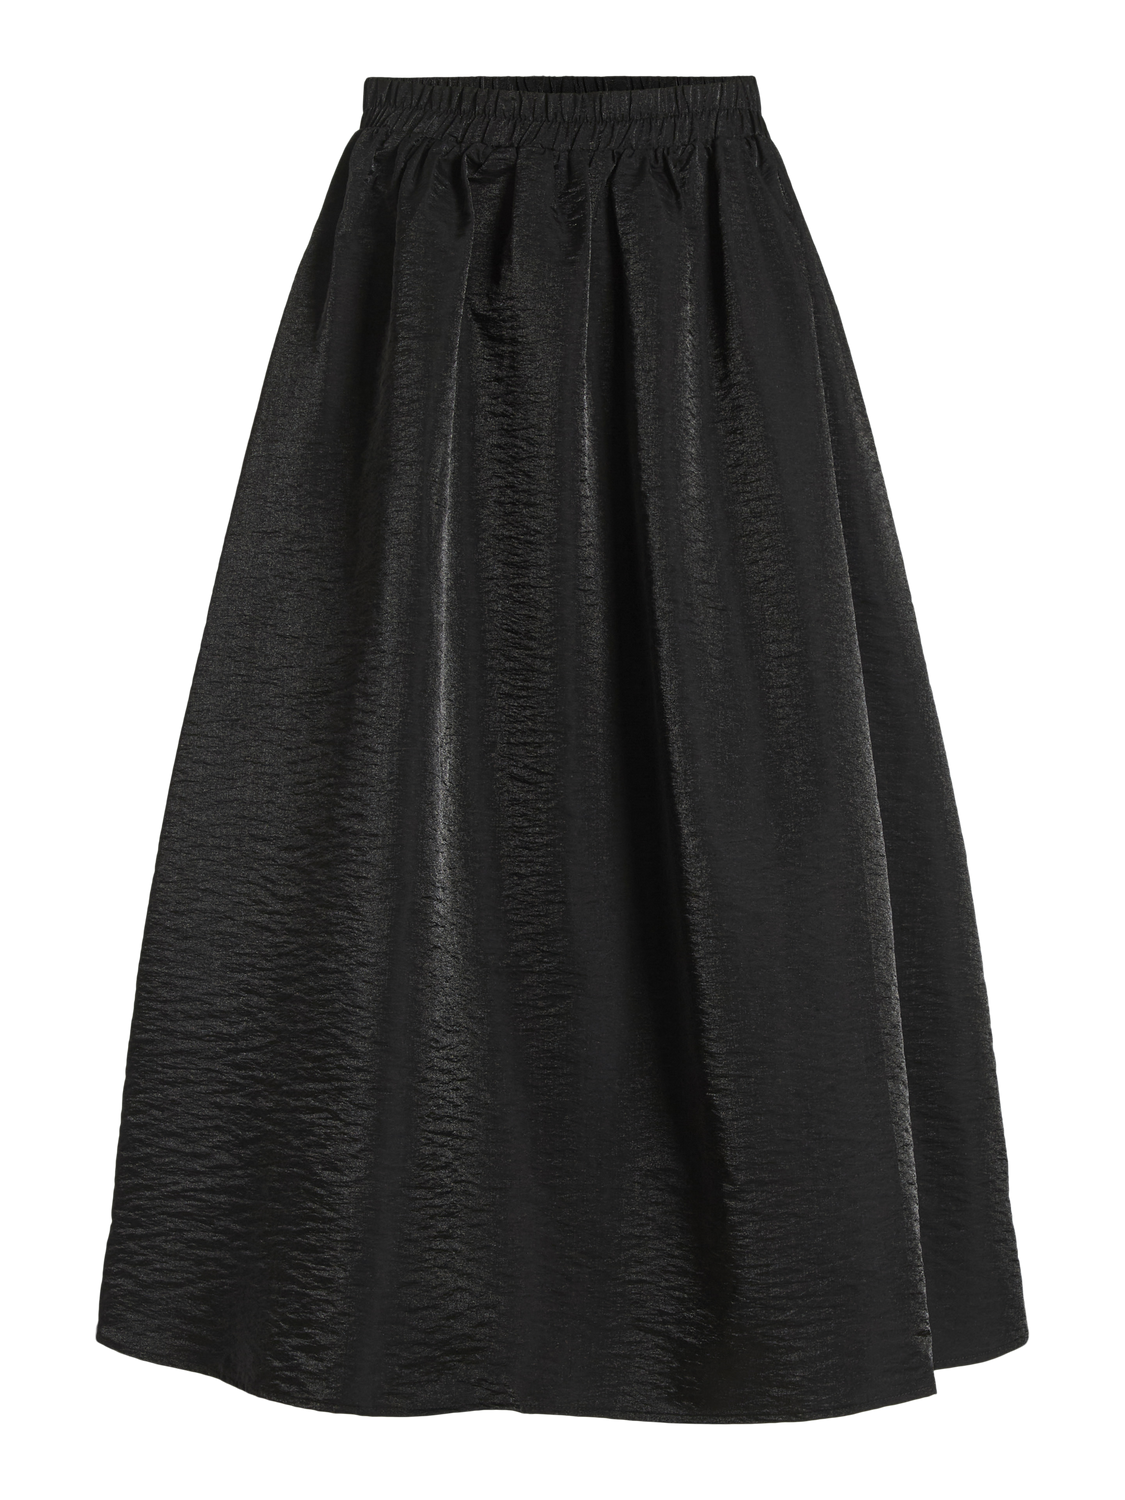 VIMABELLE Skirt - Black